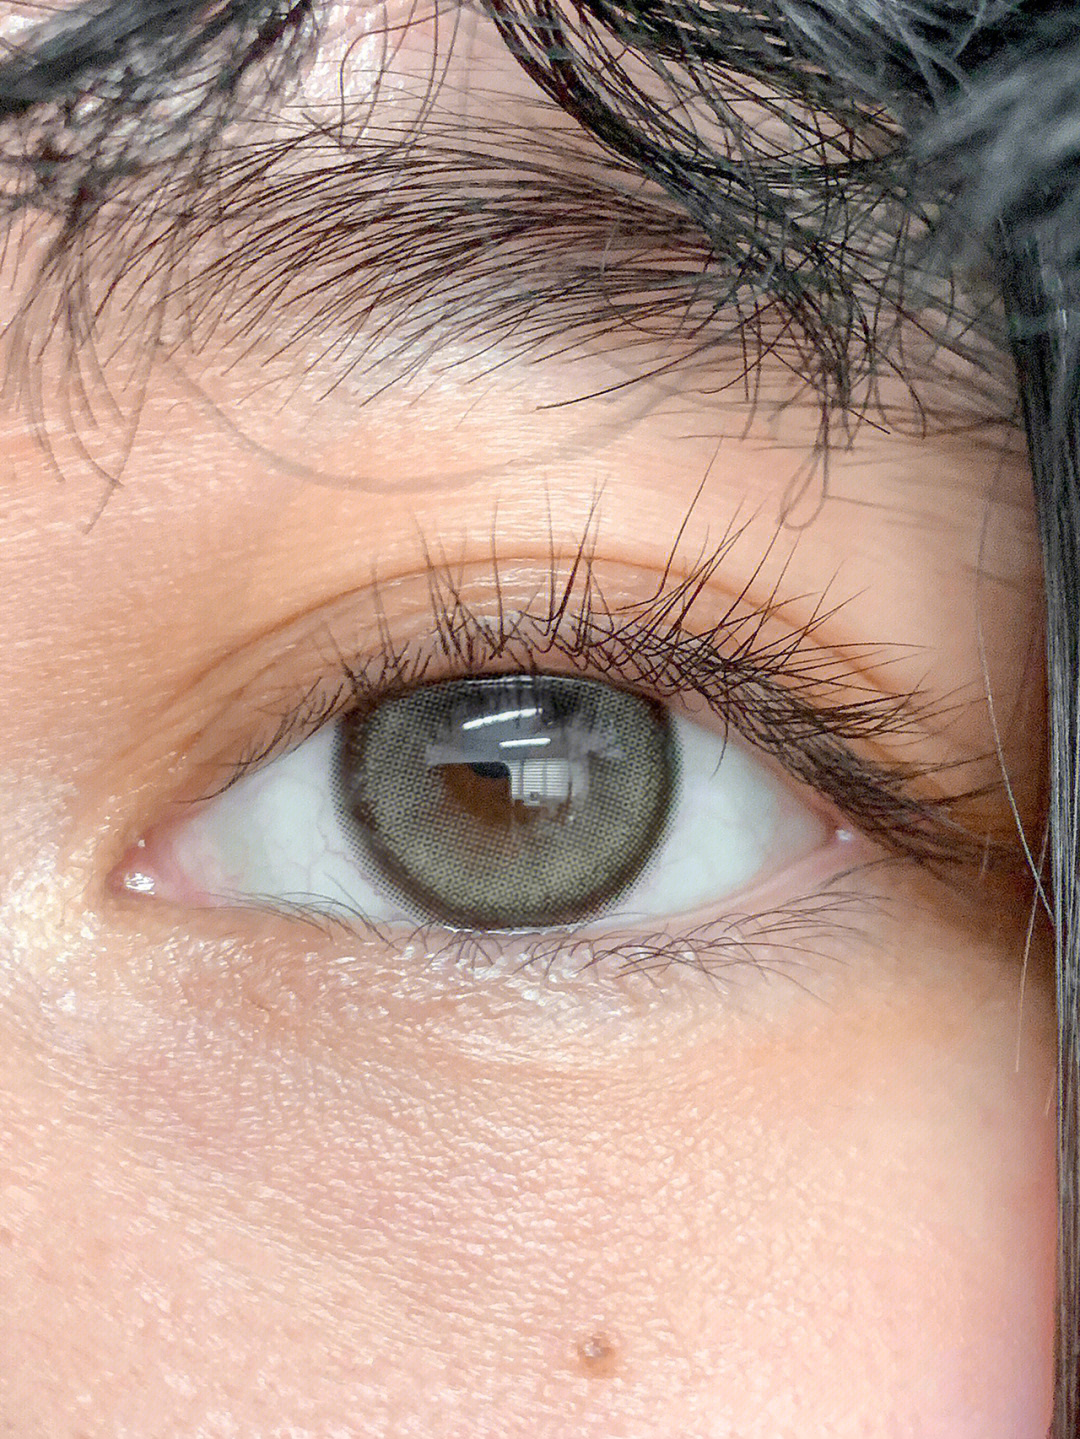 今天是灰绿色的眼睛绝美啊